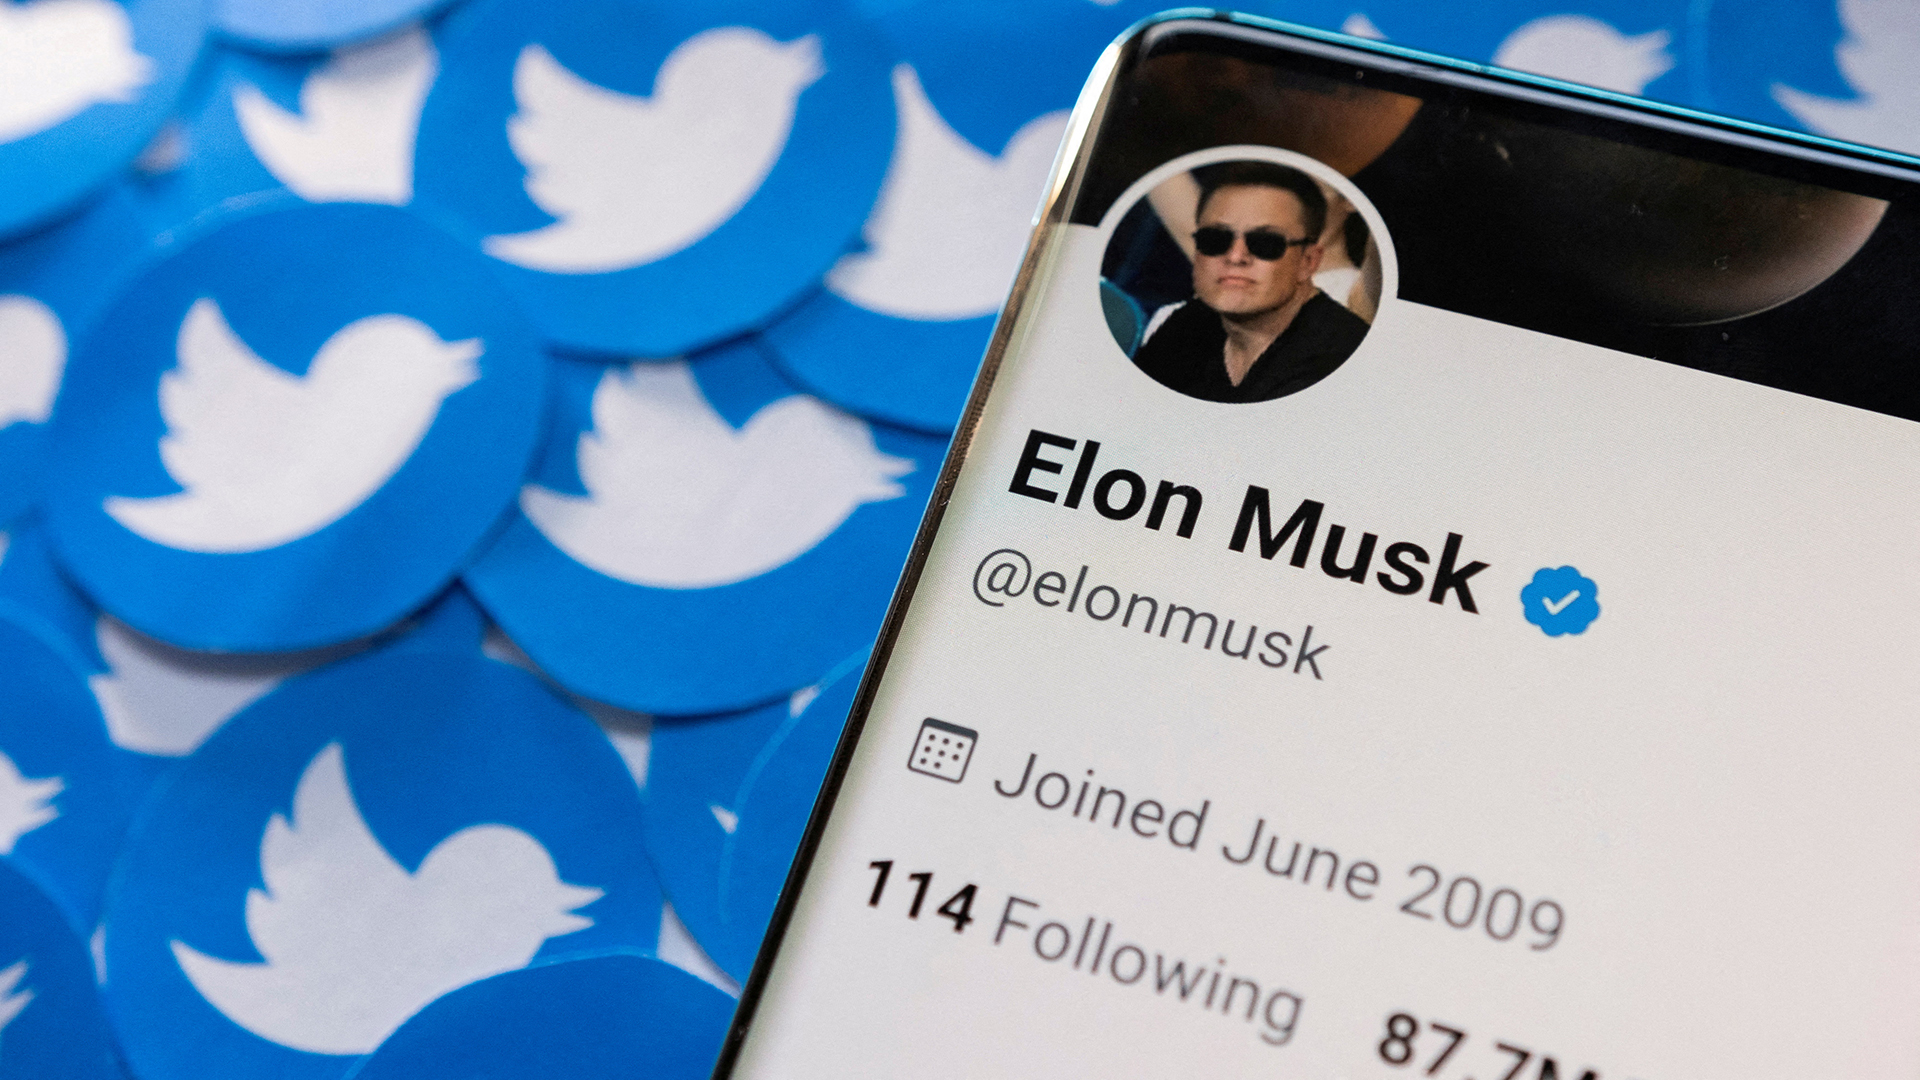 Das Twitter-Profil von Elon Musk ist auf einem Smartphone zu sehen, das auf gedruckten Twitter-Logos platziert ist. | REUTERS